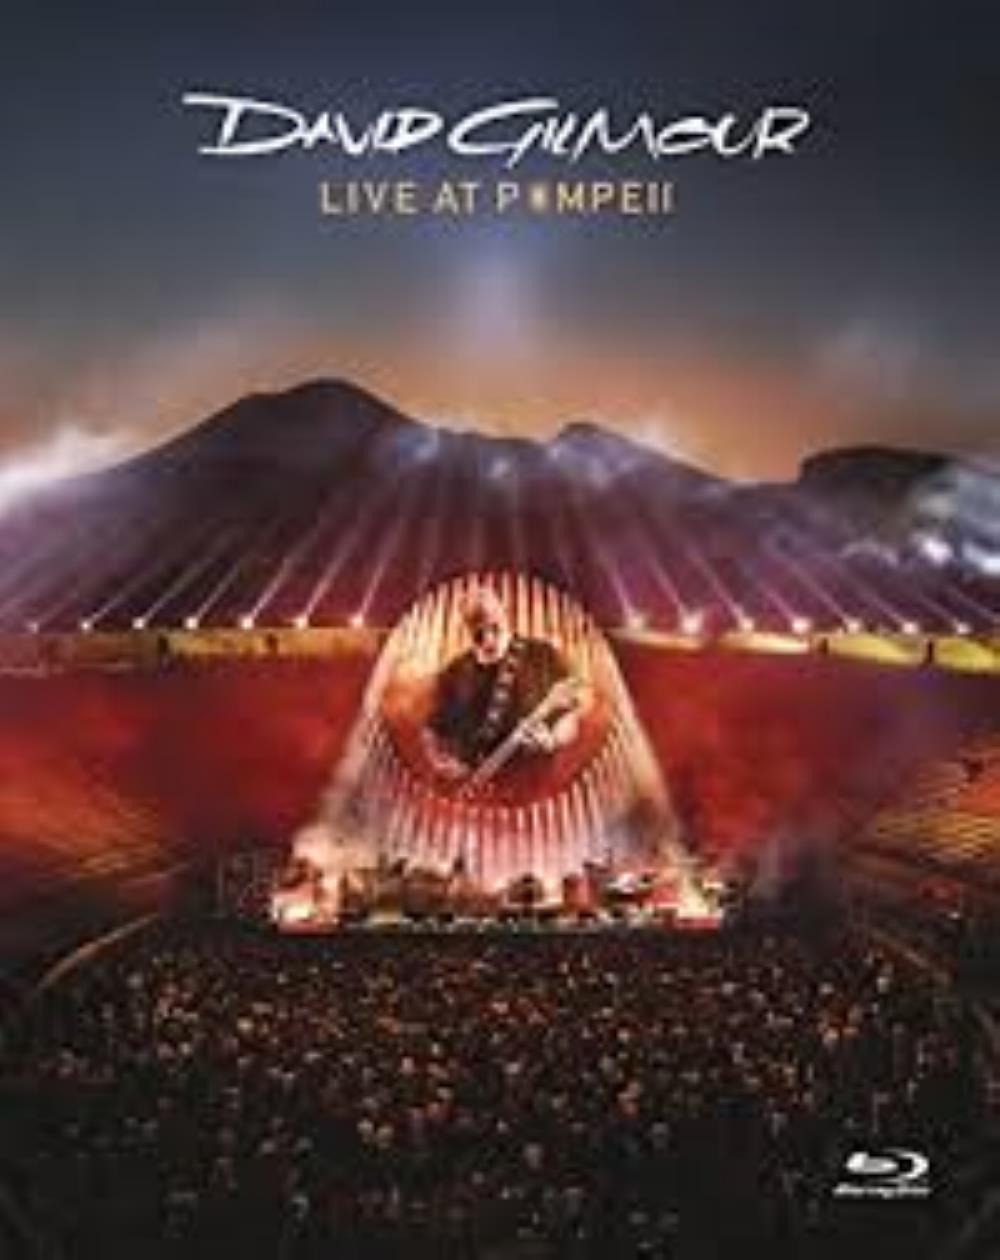 David Gilmour Live at Pompeii album cover